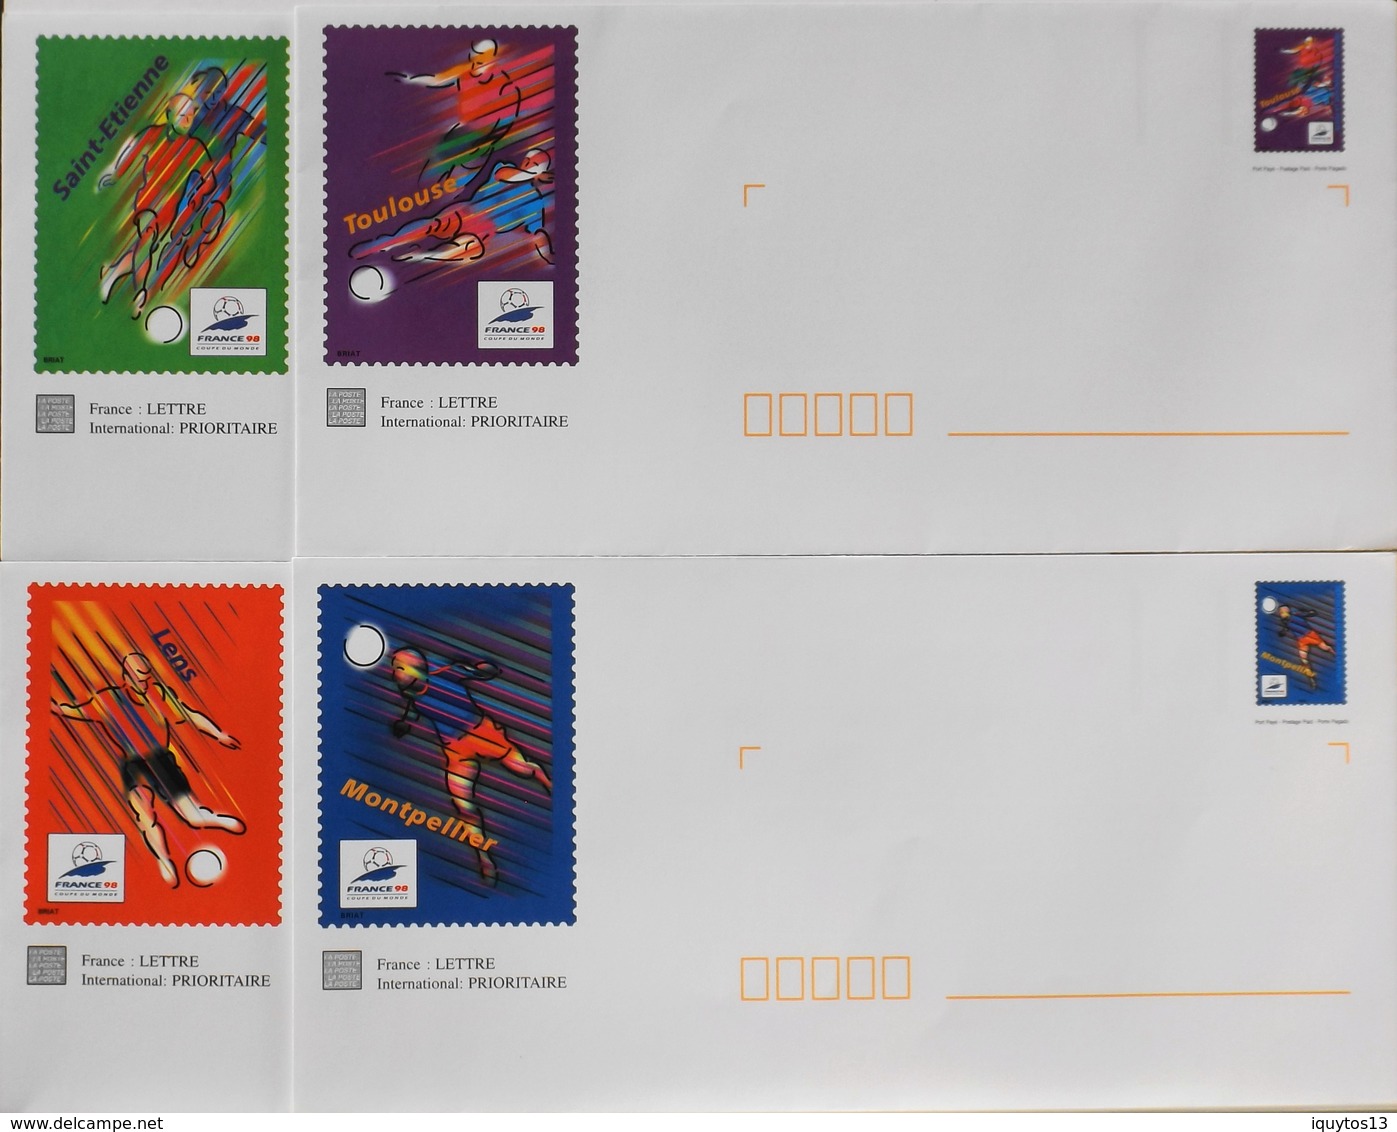 4 Enveloppes Illustrées Prêts-à-poster France 98 N° 3010 à 3013 - Envoi Lettre Prioritaire 20gr Validité Monde Entier - Listos A Ser Enviados: Otros (1995-...)